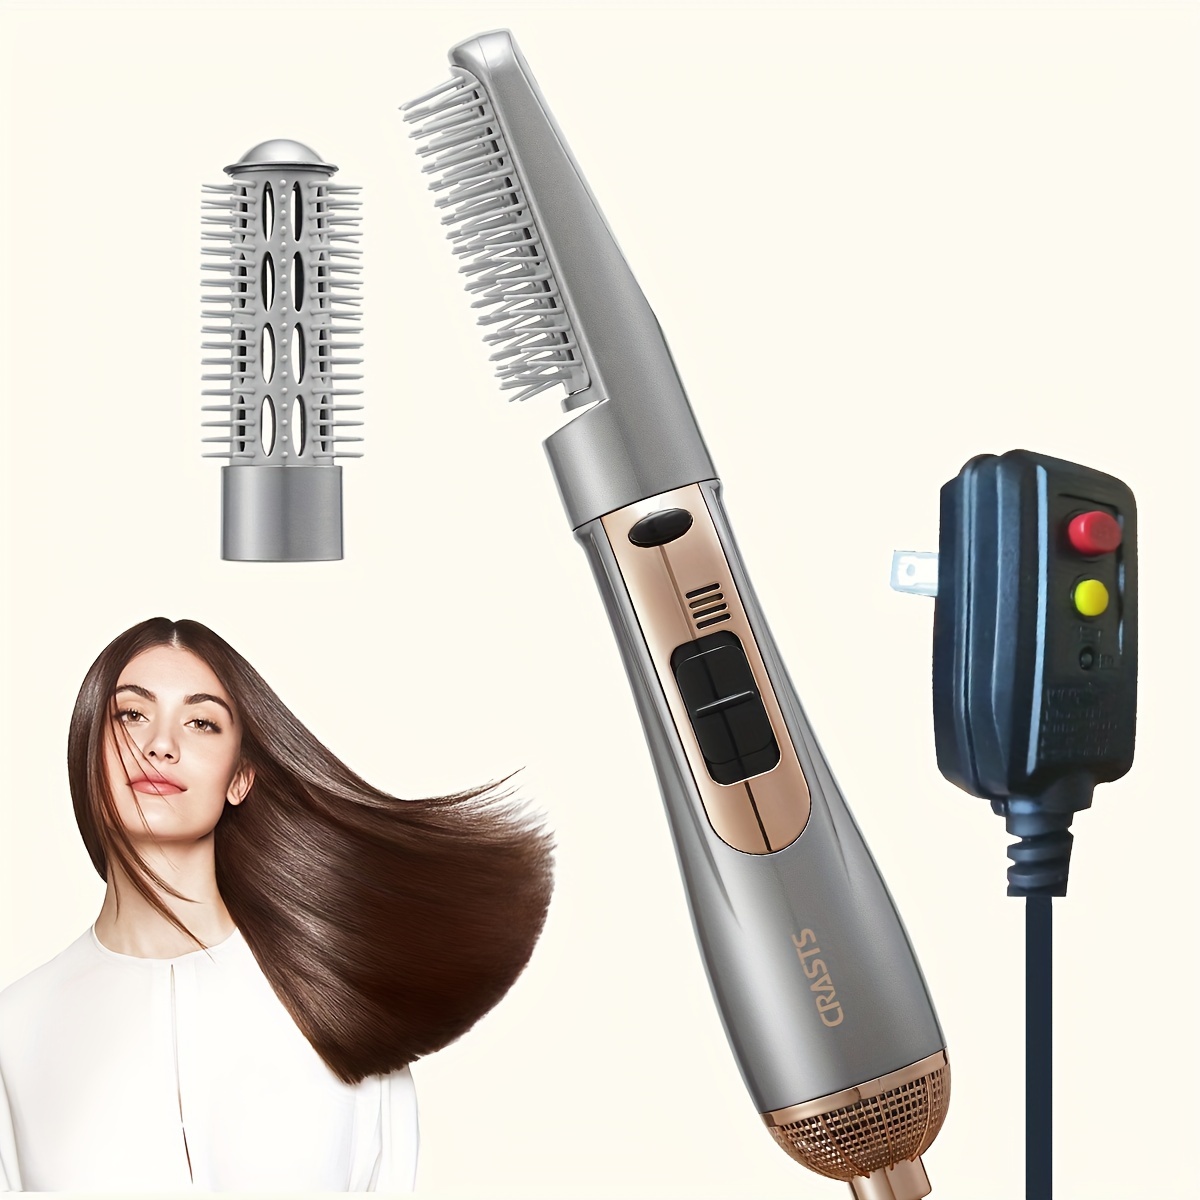 Cepillo secador de pelo, cepillo 5 en 1 con iones negativos, cepillo  desmontable e intercambiable para alisar, rizar, secar, peinar, peinar  masaje del